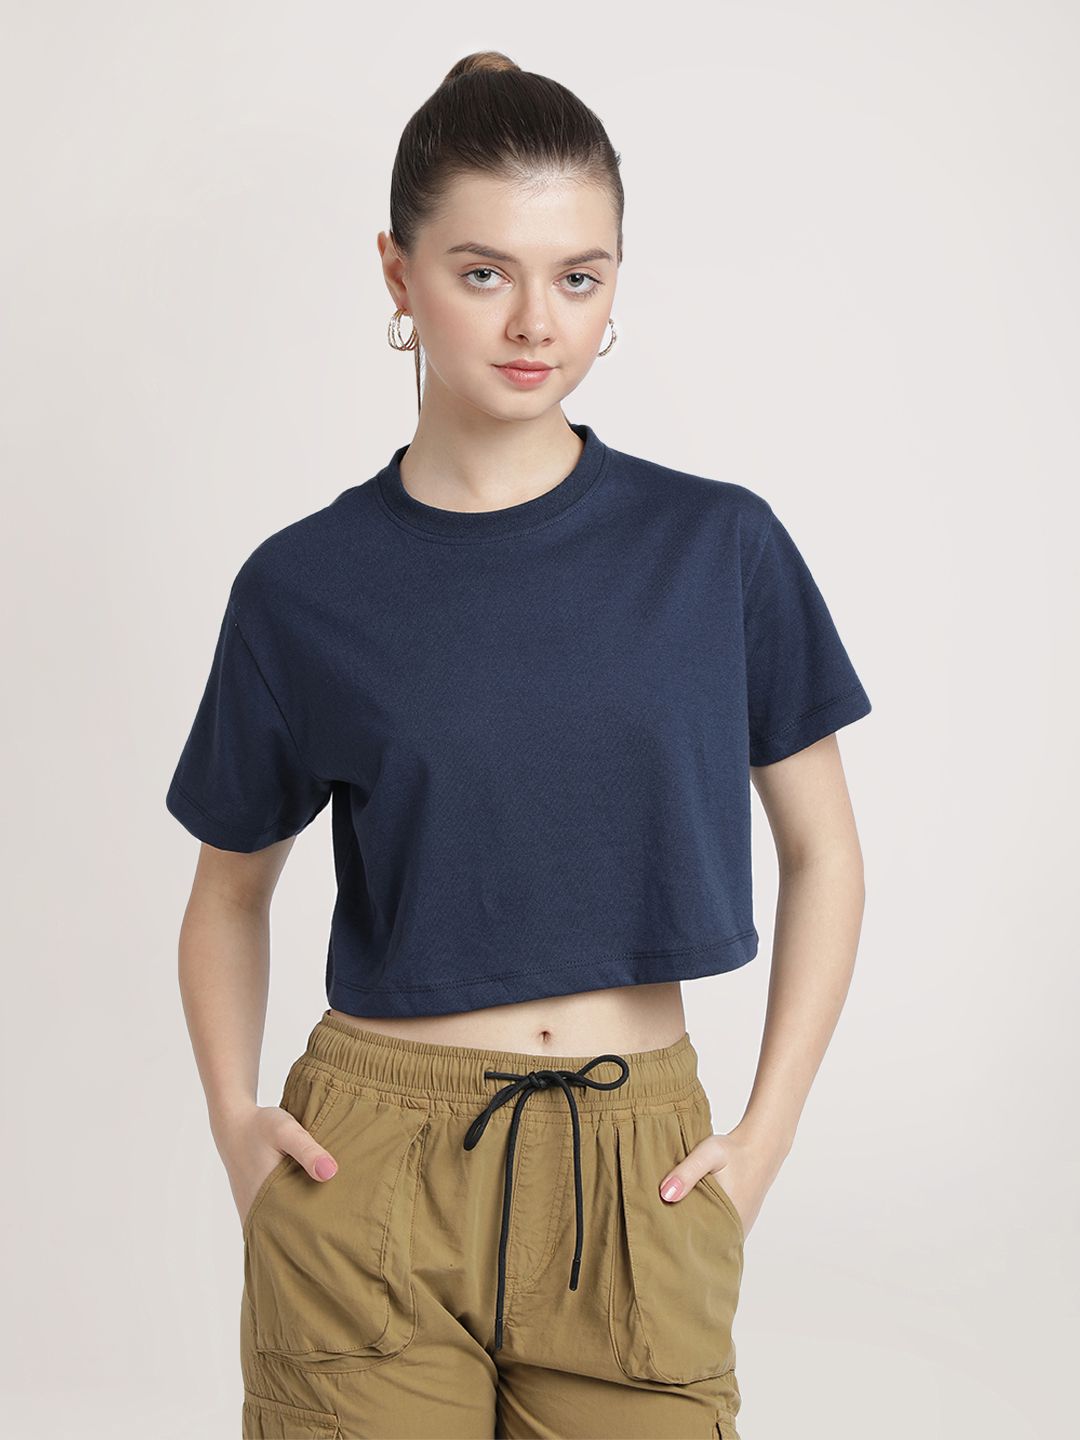     			Bene Kleed Navy Cotton Blend Regular Fit Women's T-Shirt ( Pack of 1 )